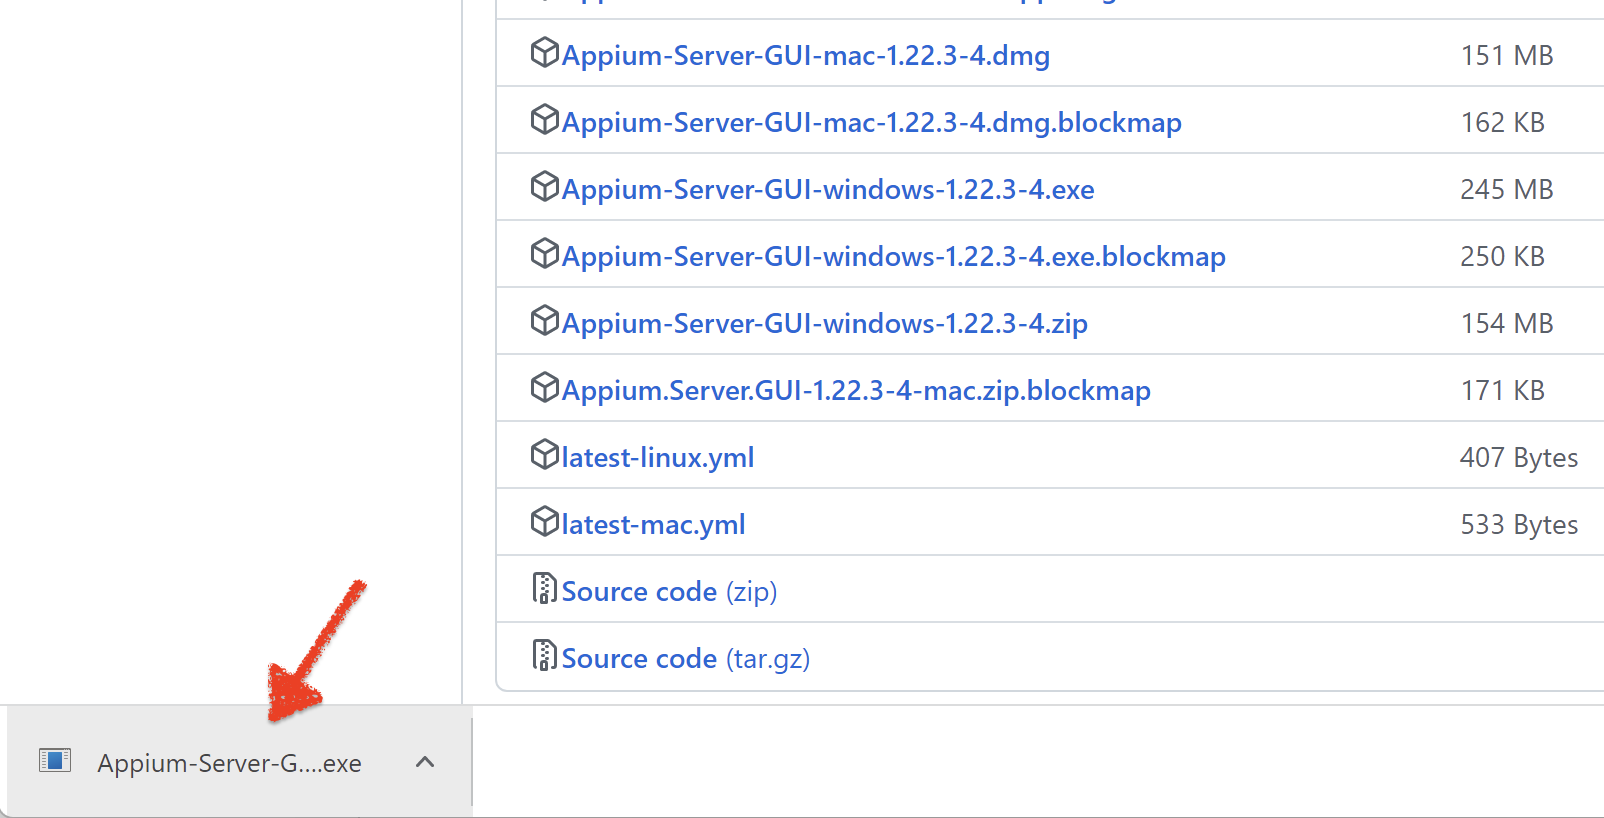 Appium Desktop Client download for Windows